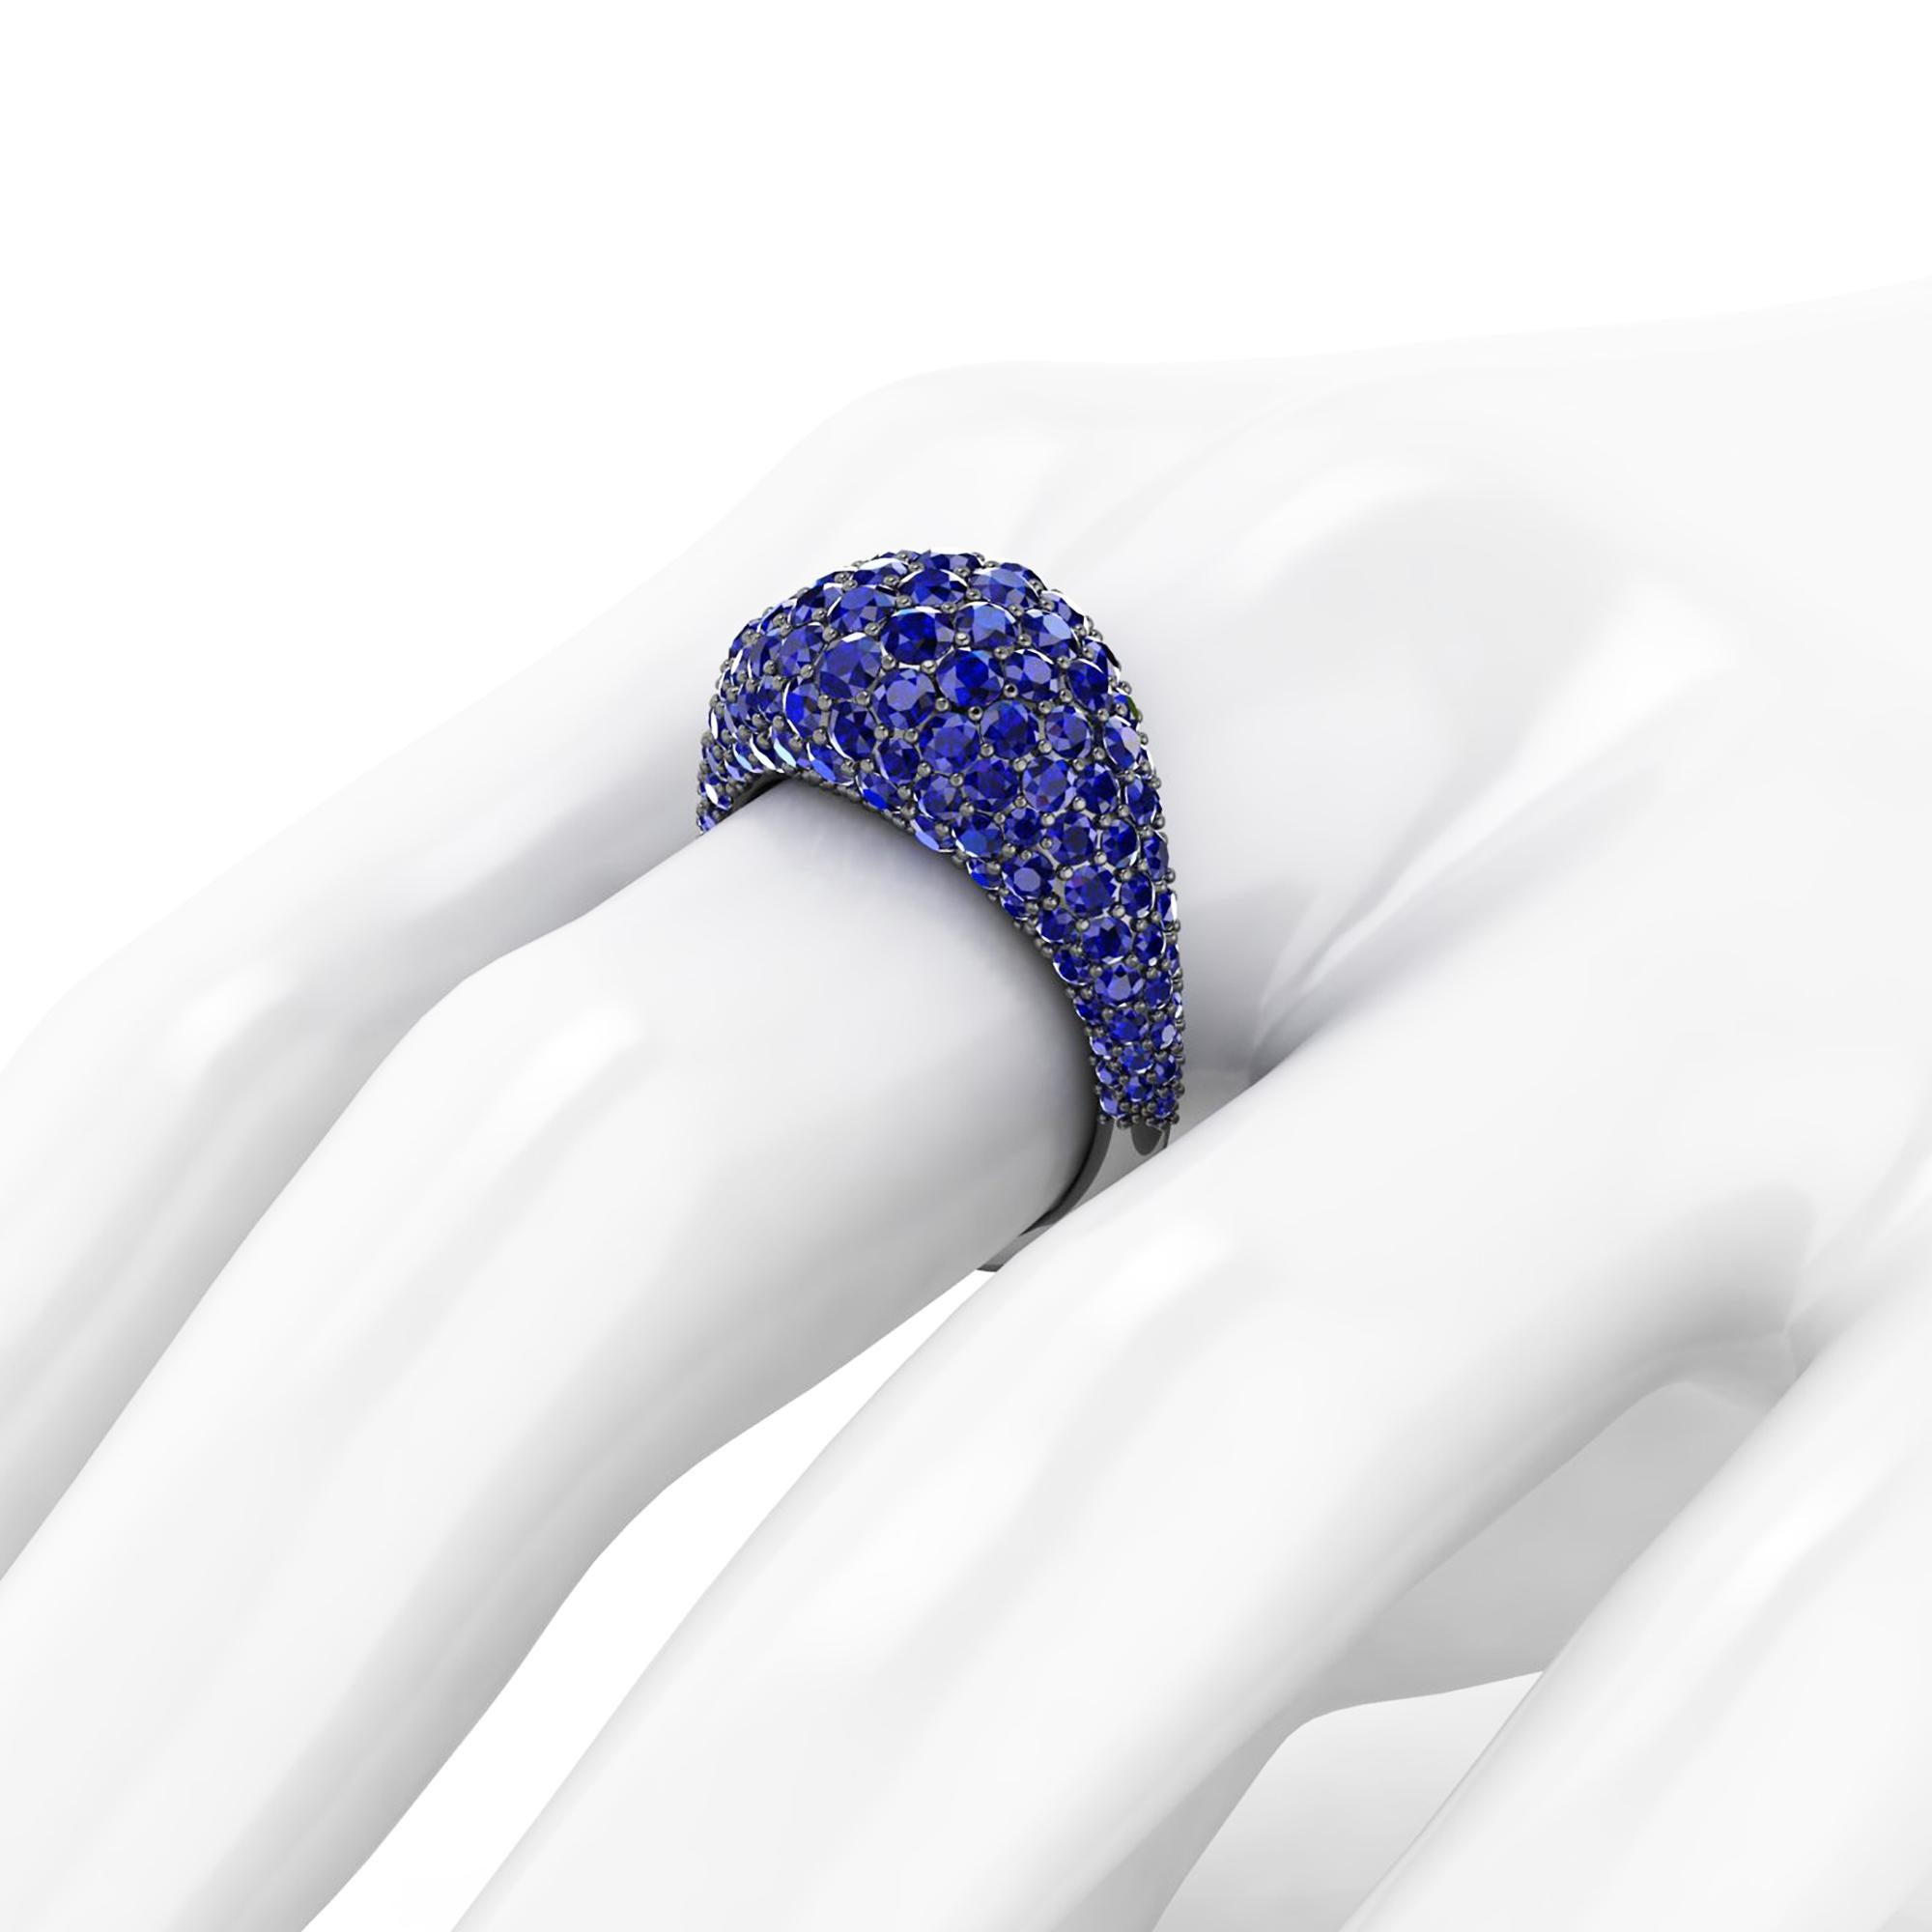 Kuppel, blaue Saphire organischer Ring, mit einem leicht kuppelförmigen Gefühl, ein Wrap von funkelnden, intensiven, blauen Saphiren, für eine ungefähre Saphir's insgesamt Karat Gewicht von 2,60 Karat, handgefertigt in New York City von Hand durch 